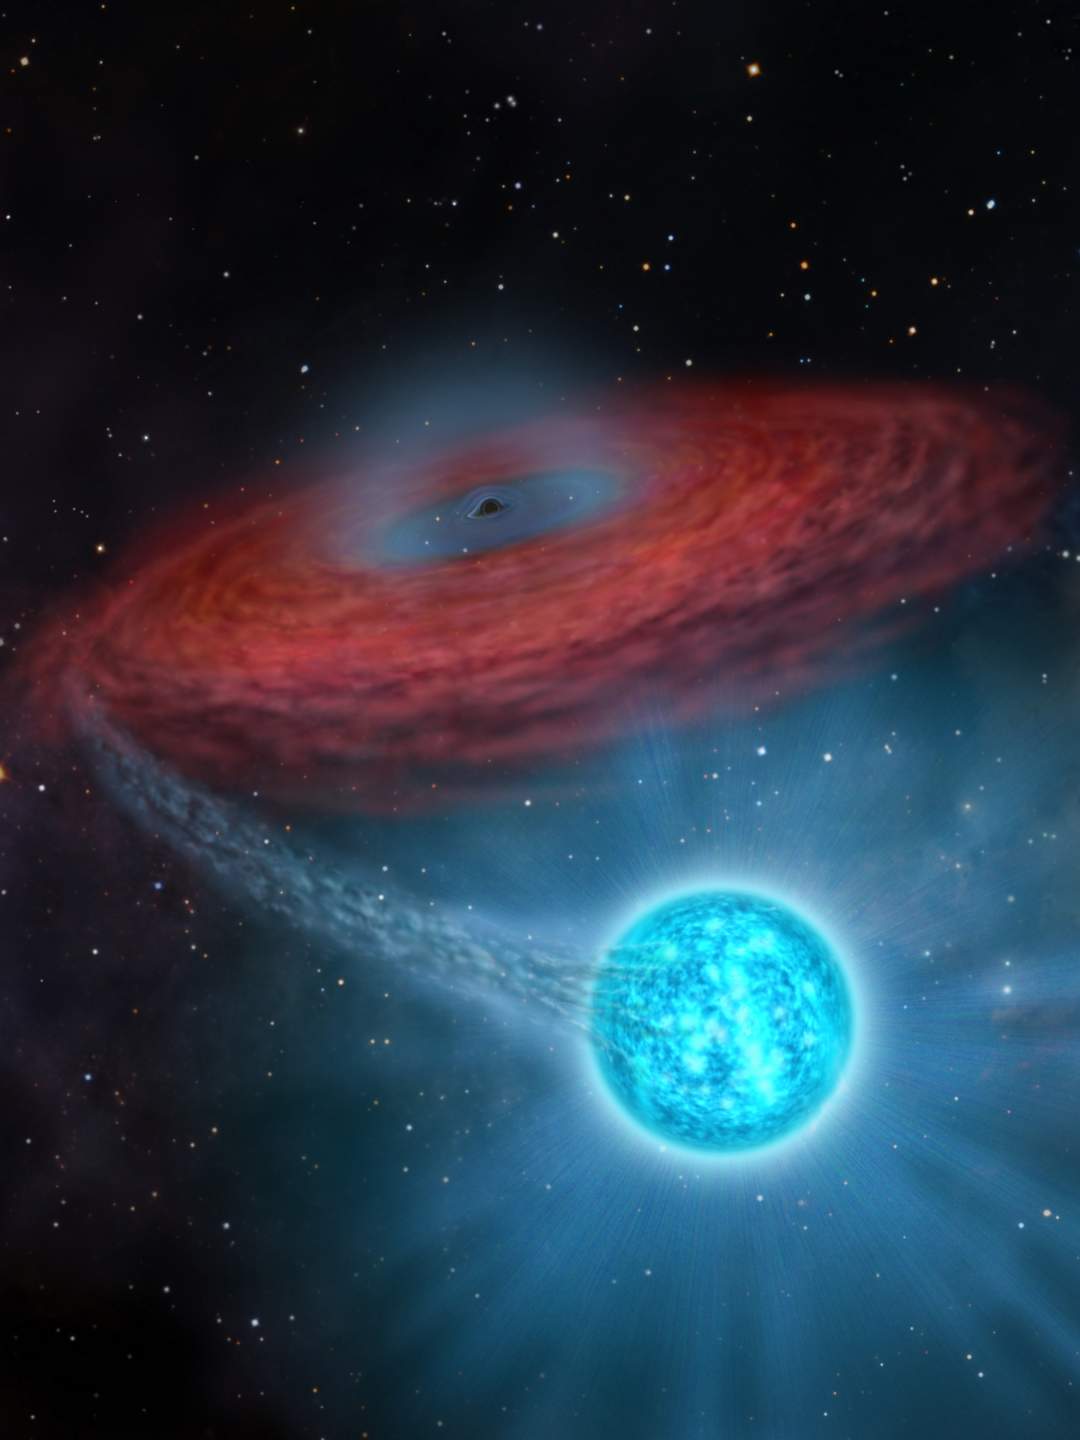 天文学家发现迄今最大恒星级黑洞 70倍太阳质量